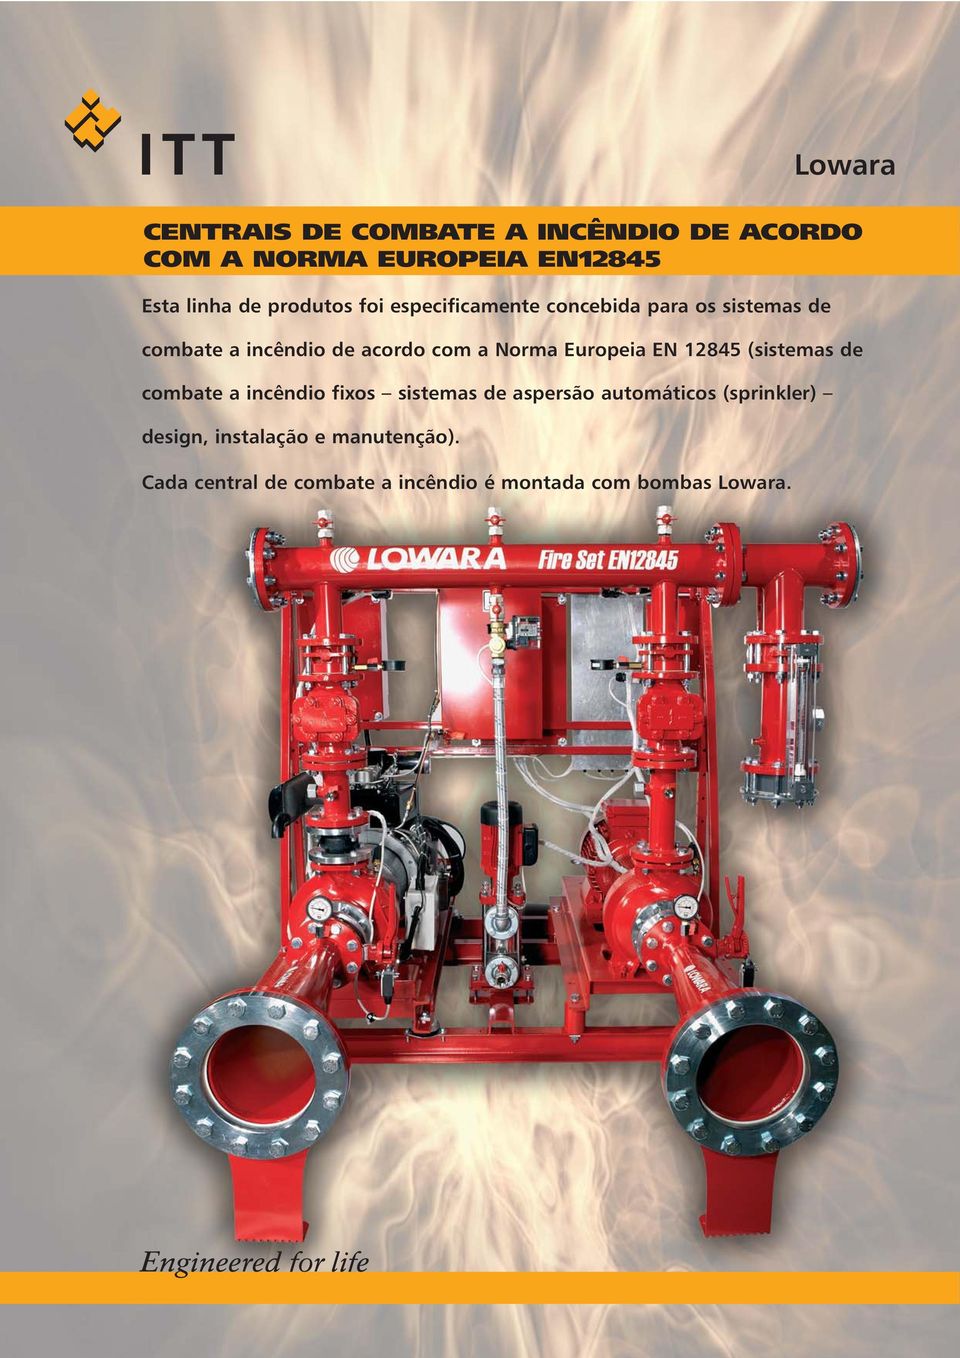 Europeia EN 12845 (sistemas de combate a incêndio fixos sistemas de aspersão automáticos